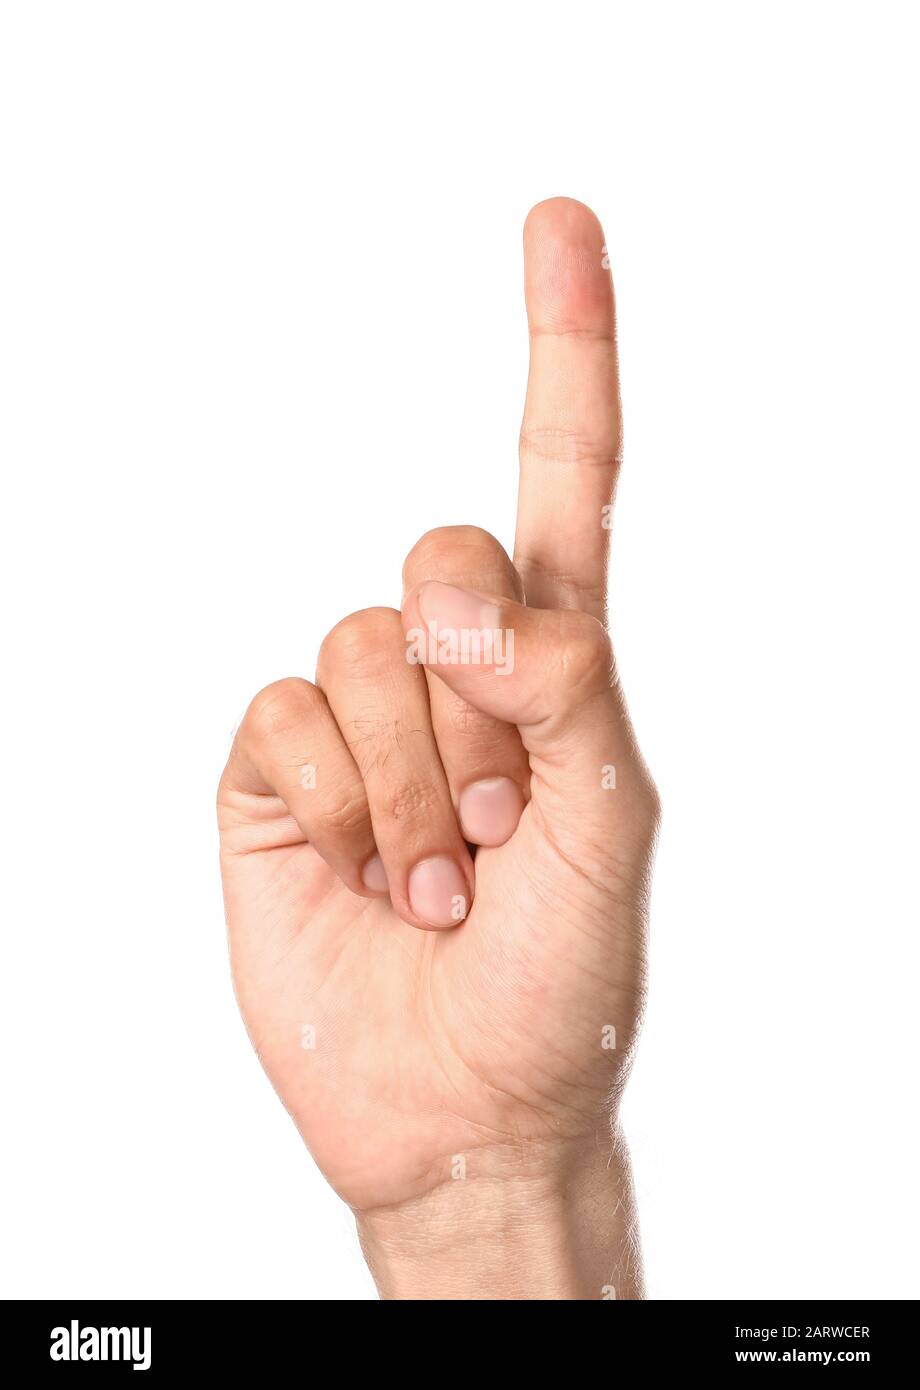 Mano macho con dedo índice elevado sobre fondo blanco Foto de stock